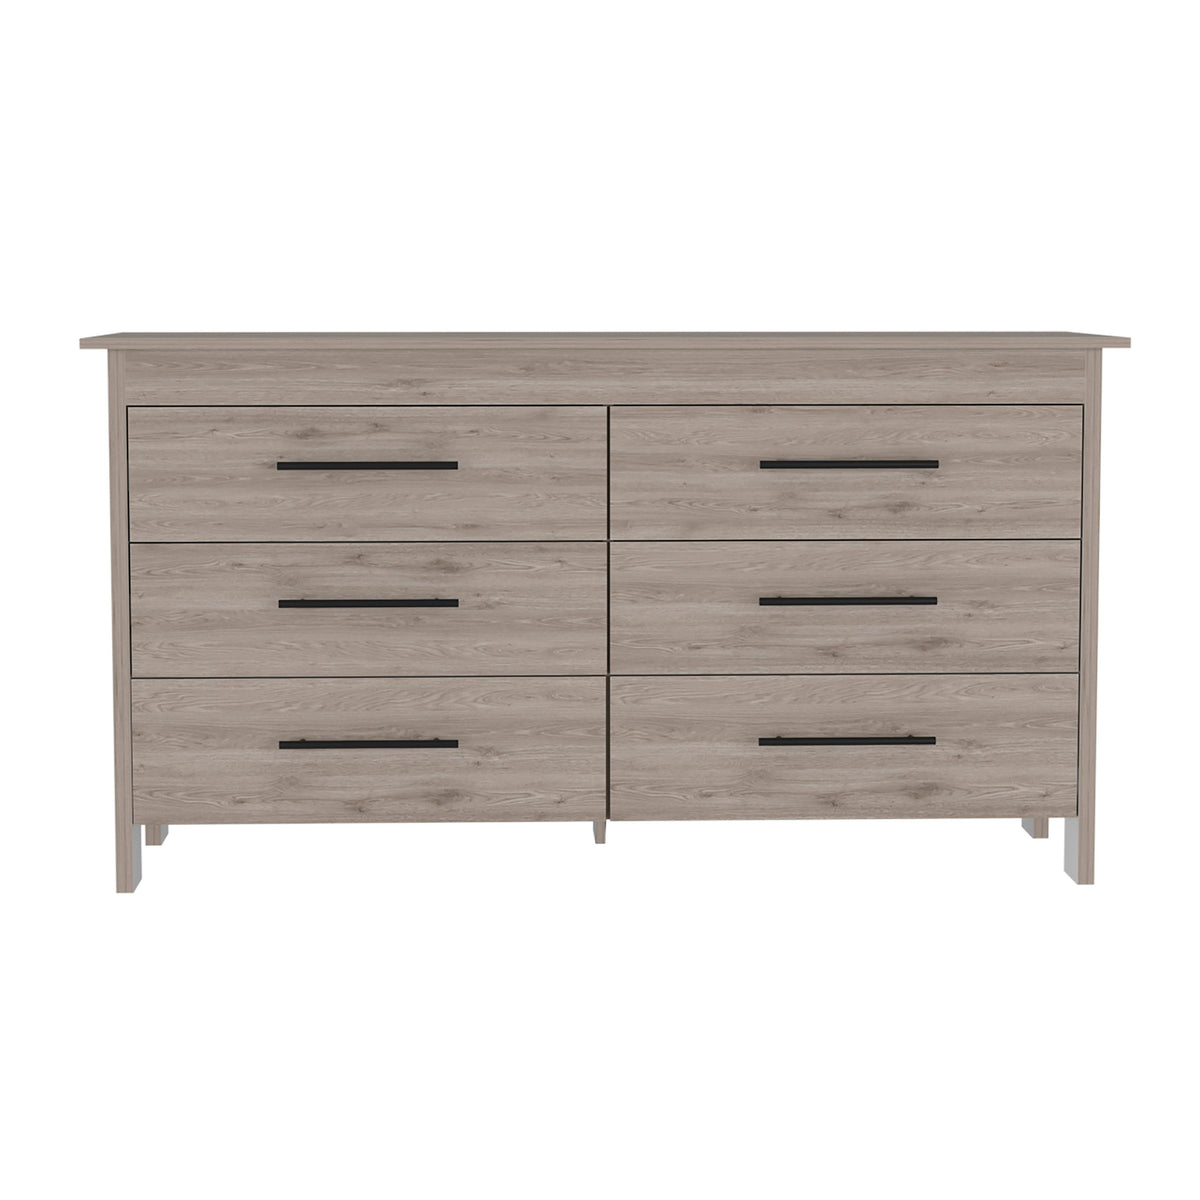 6 Drawer Double Dresser - Light Gray